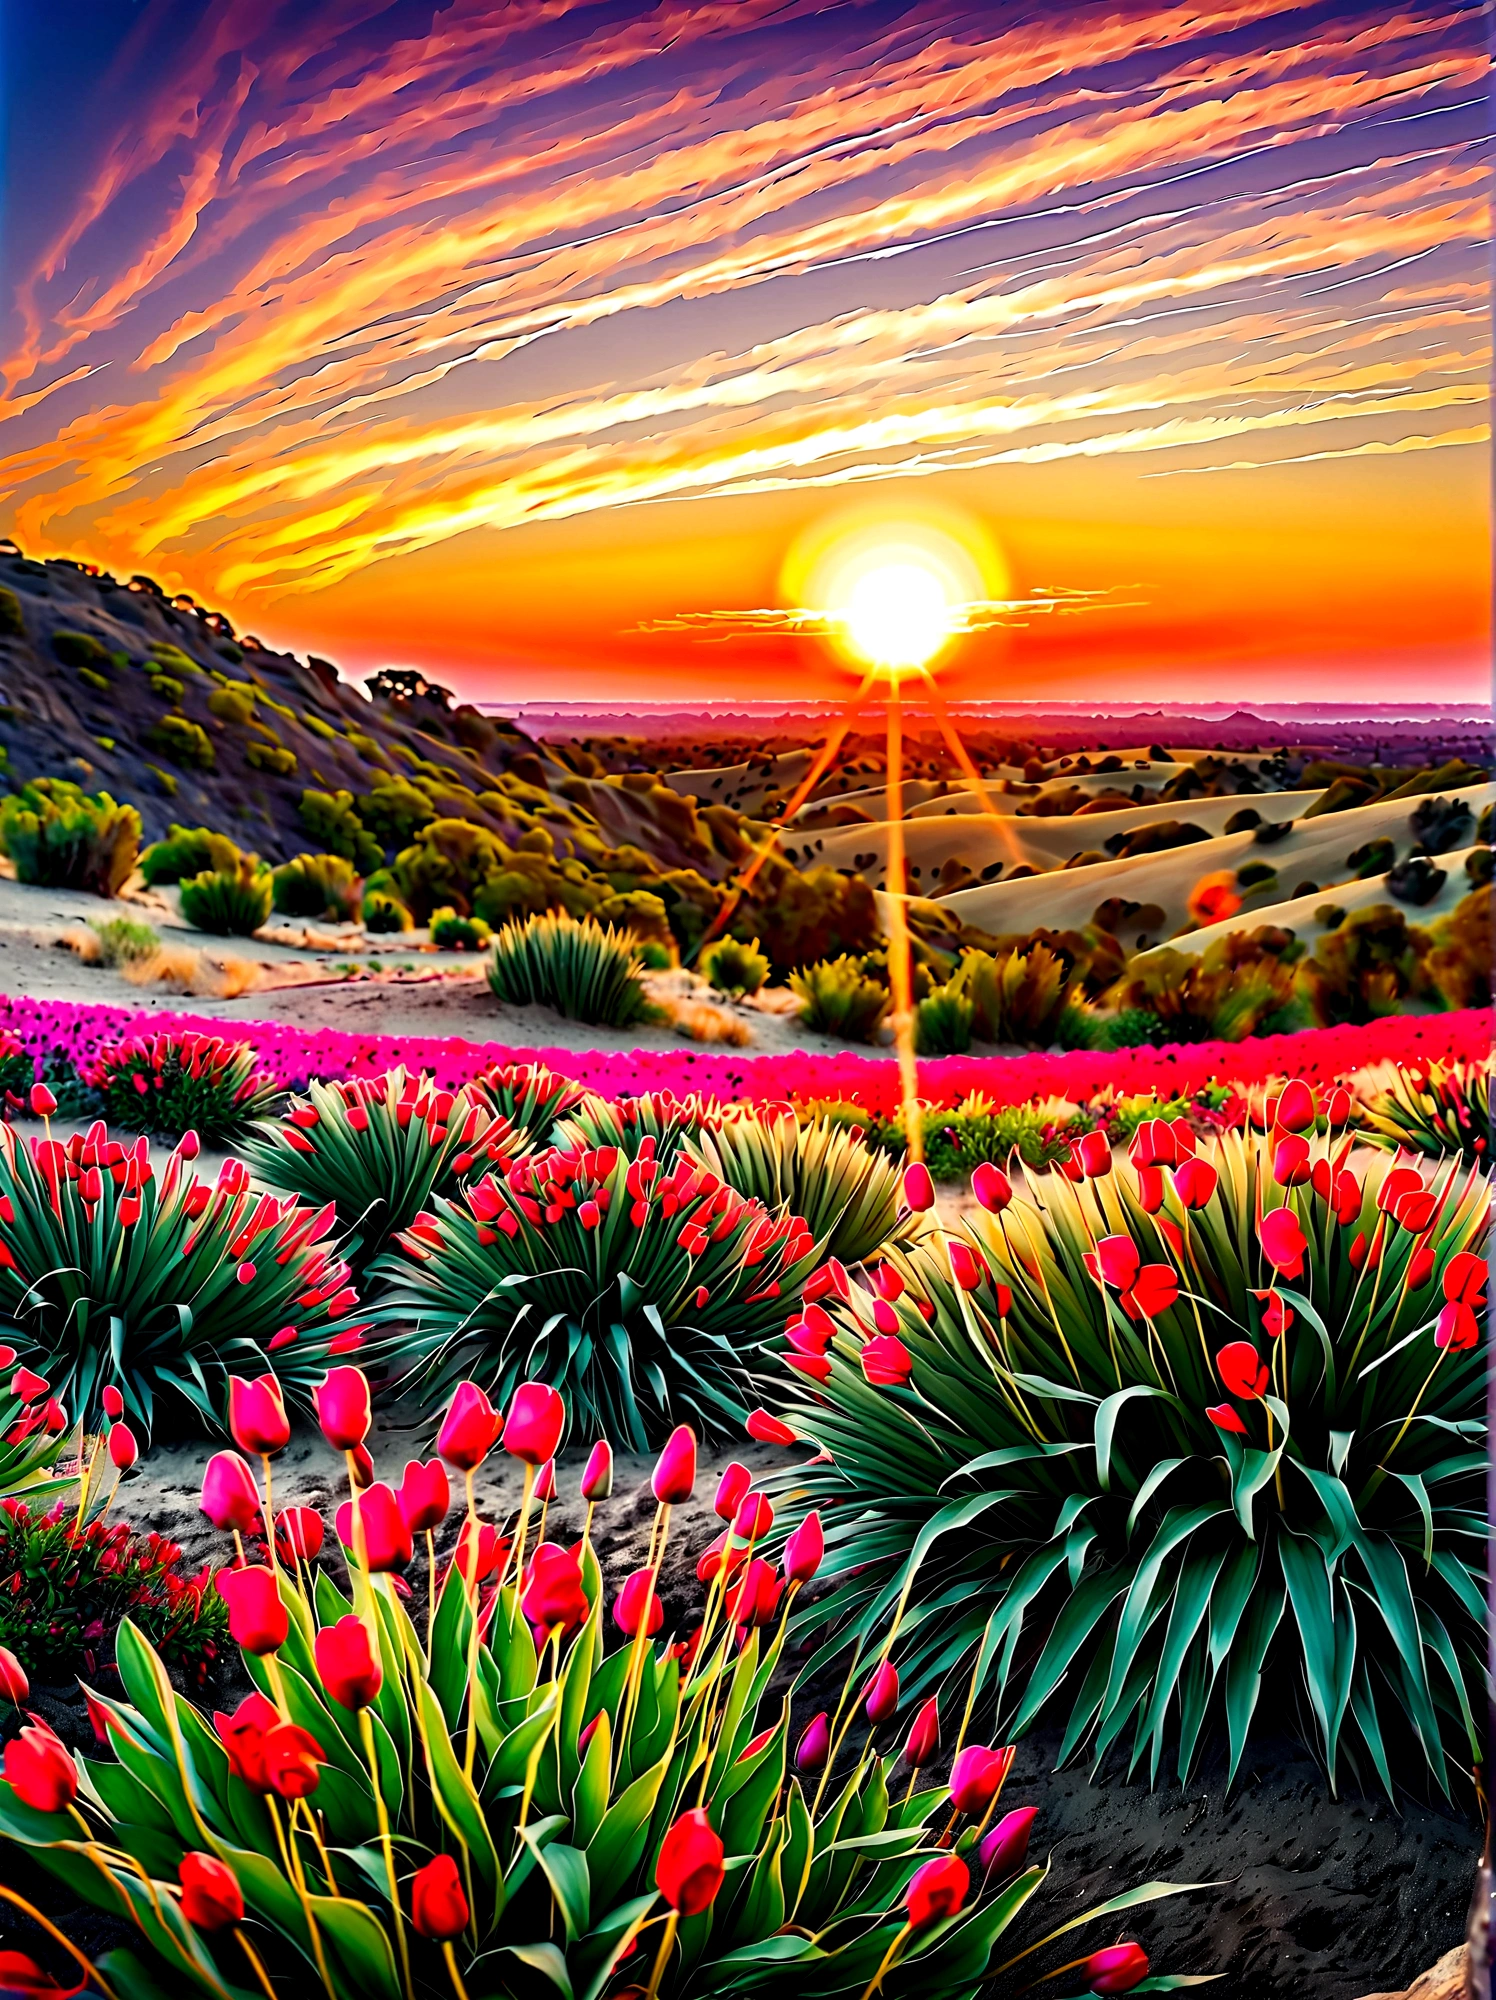 (夜明けの日の出時刻:1.6)，素晴らしい日の出と澄み切った穏やかな朝の空. 太陽が地平線から顔を出し始めた, its 金en rays illuminating the sky in radiant hues of orange and pink. 太陽そのものは魅力的な丸い火の玉のように見える, 雄大な色のグラデーションを通して視覚的に感じられる暖かさ. ゆっくり, 上昇し始める, 地上の世界に新たな光とエネルギーをもたらす. 鮮やかな黄色の色合い, 金, そして赤は太陽の生命力の象徴です. その間, 夜の残り, 深い紫と青, この美しい朝の情景の端にまだ残っている, 戻ってくるのを待っているが、今のところ, 雄大な太陽の栄光を祝う, 視点は広角ビューで、自然の要素に満ちた息を呑むような風景の広大な範囲を強調しています。, 画像は光と影を効果的に使用してドラマチックさと壮大さを感じさせるものでなければならない。.